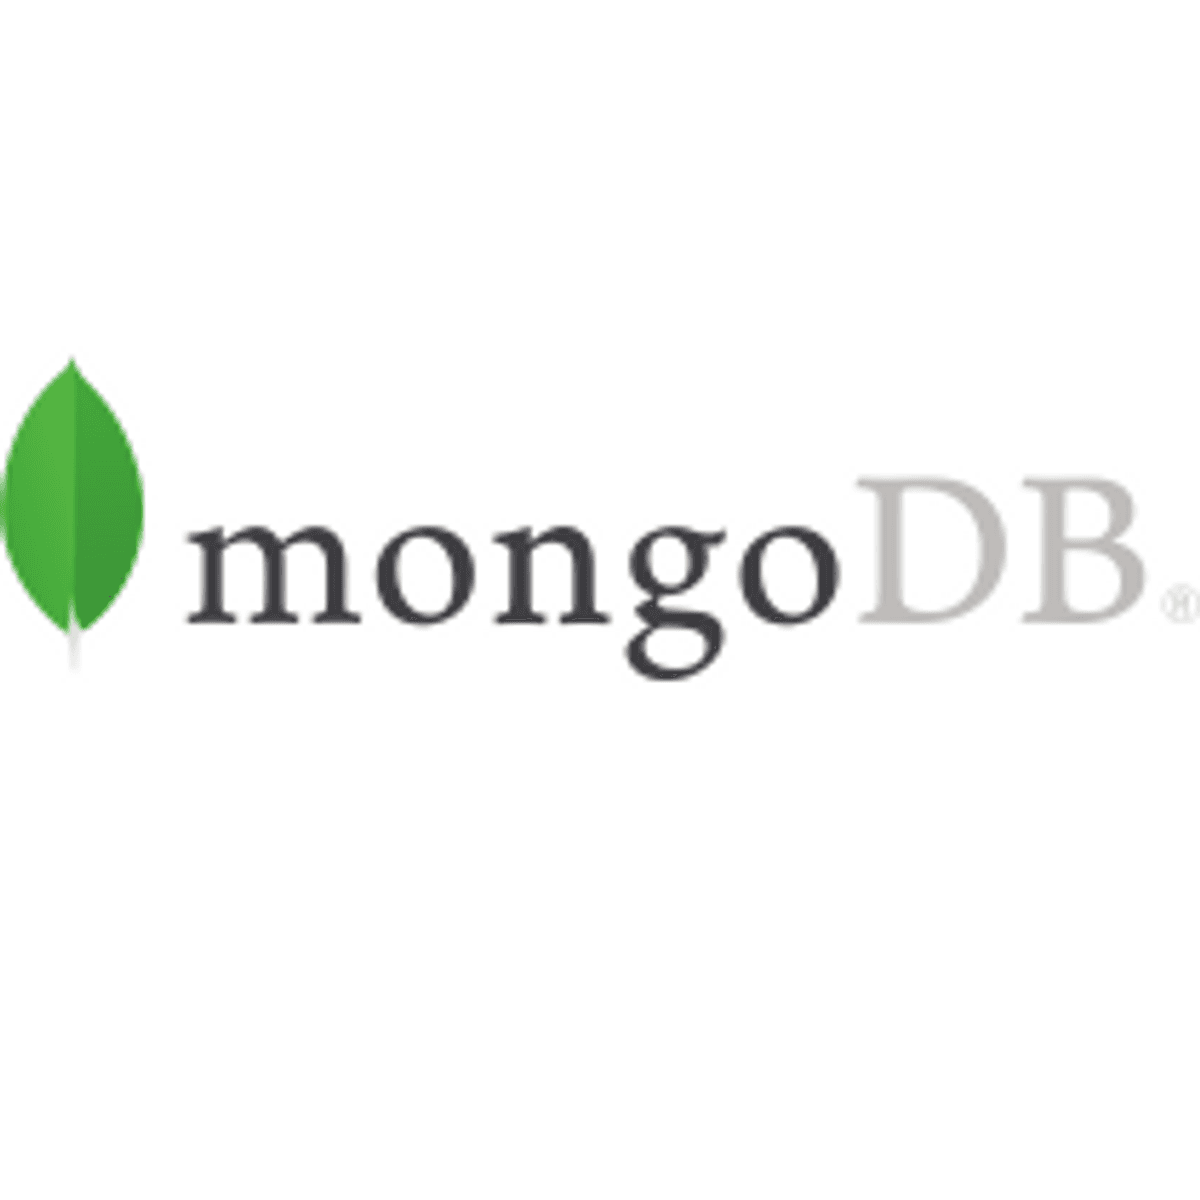 DevRepublic officieel partner van MongoDB image